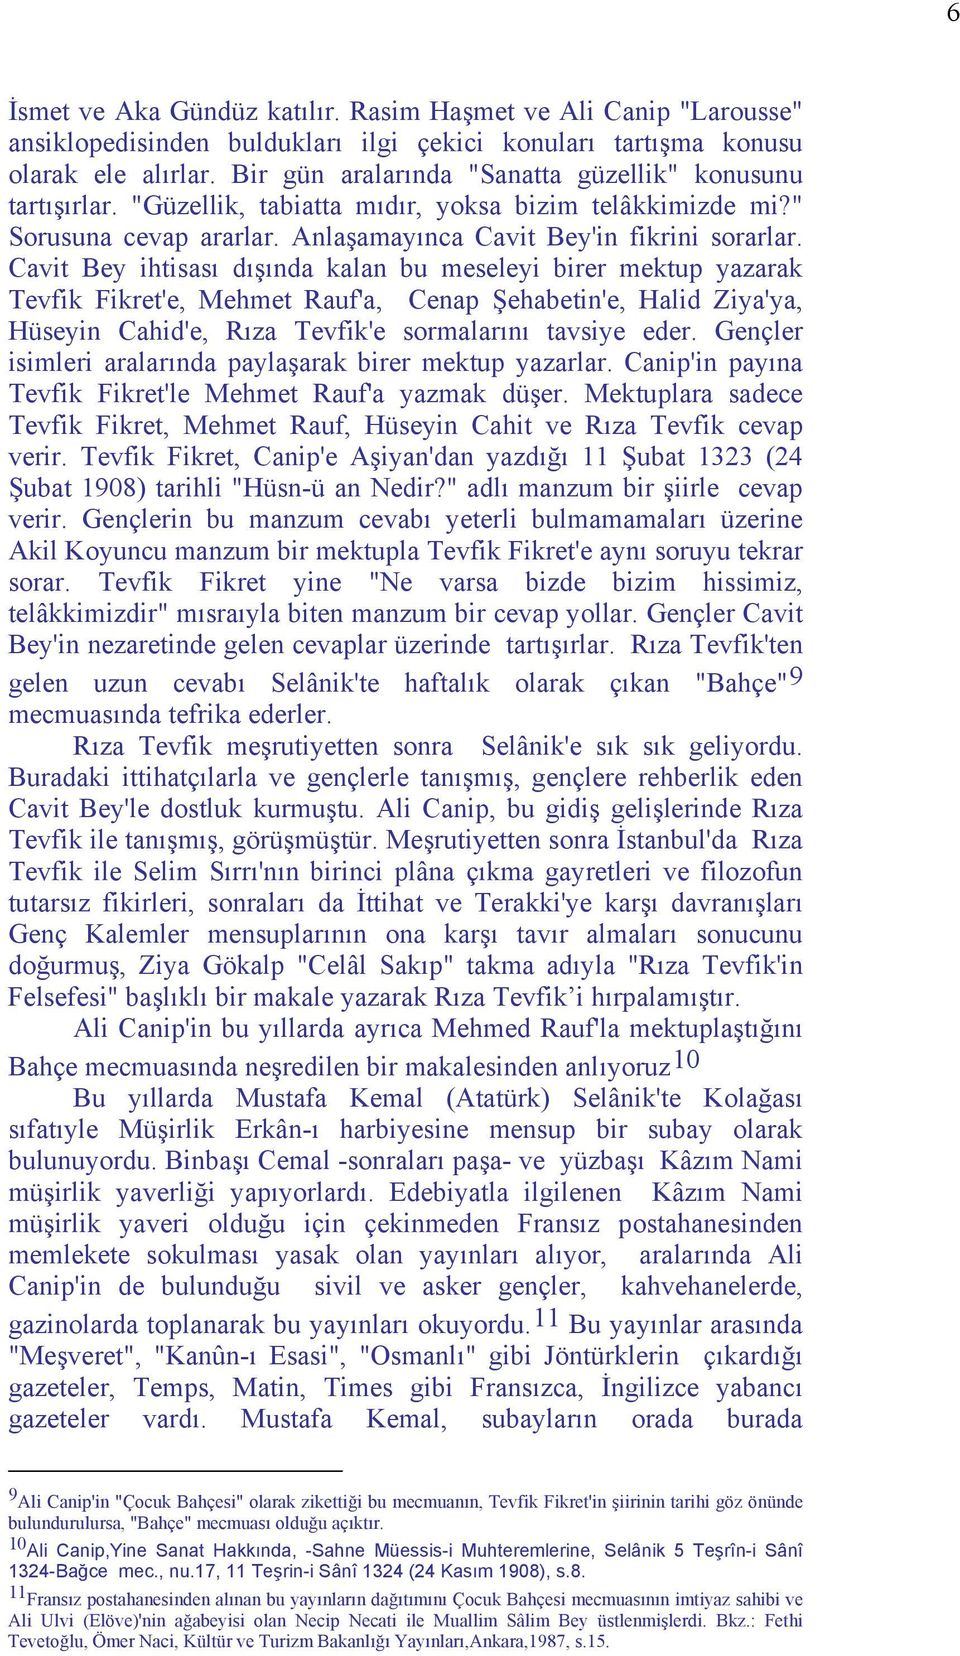 Cavit Bey ihtisası dışında kalan bu meseleyi birer mektup yazarak Tevfik Fikret'e, Mehmet Rauf'a, Cenap Şehabetin'e, Halid Ziya'ya, Hüseyin Cahid'e, Rıza Tevfik'e sormalarını tavsiye eder.